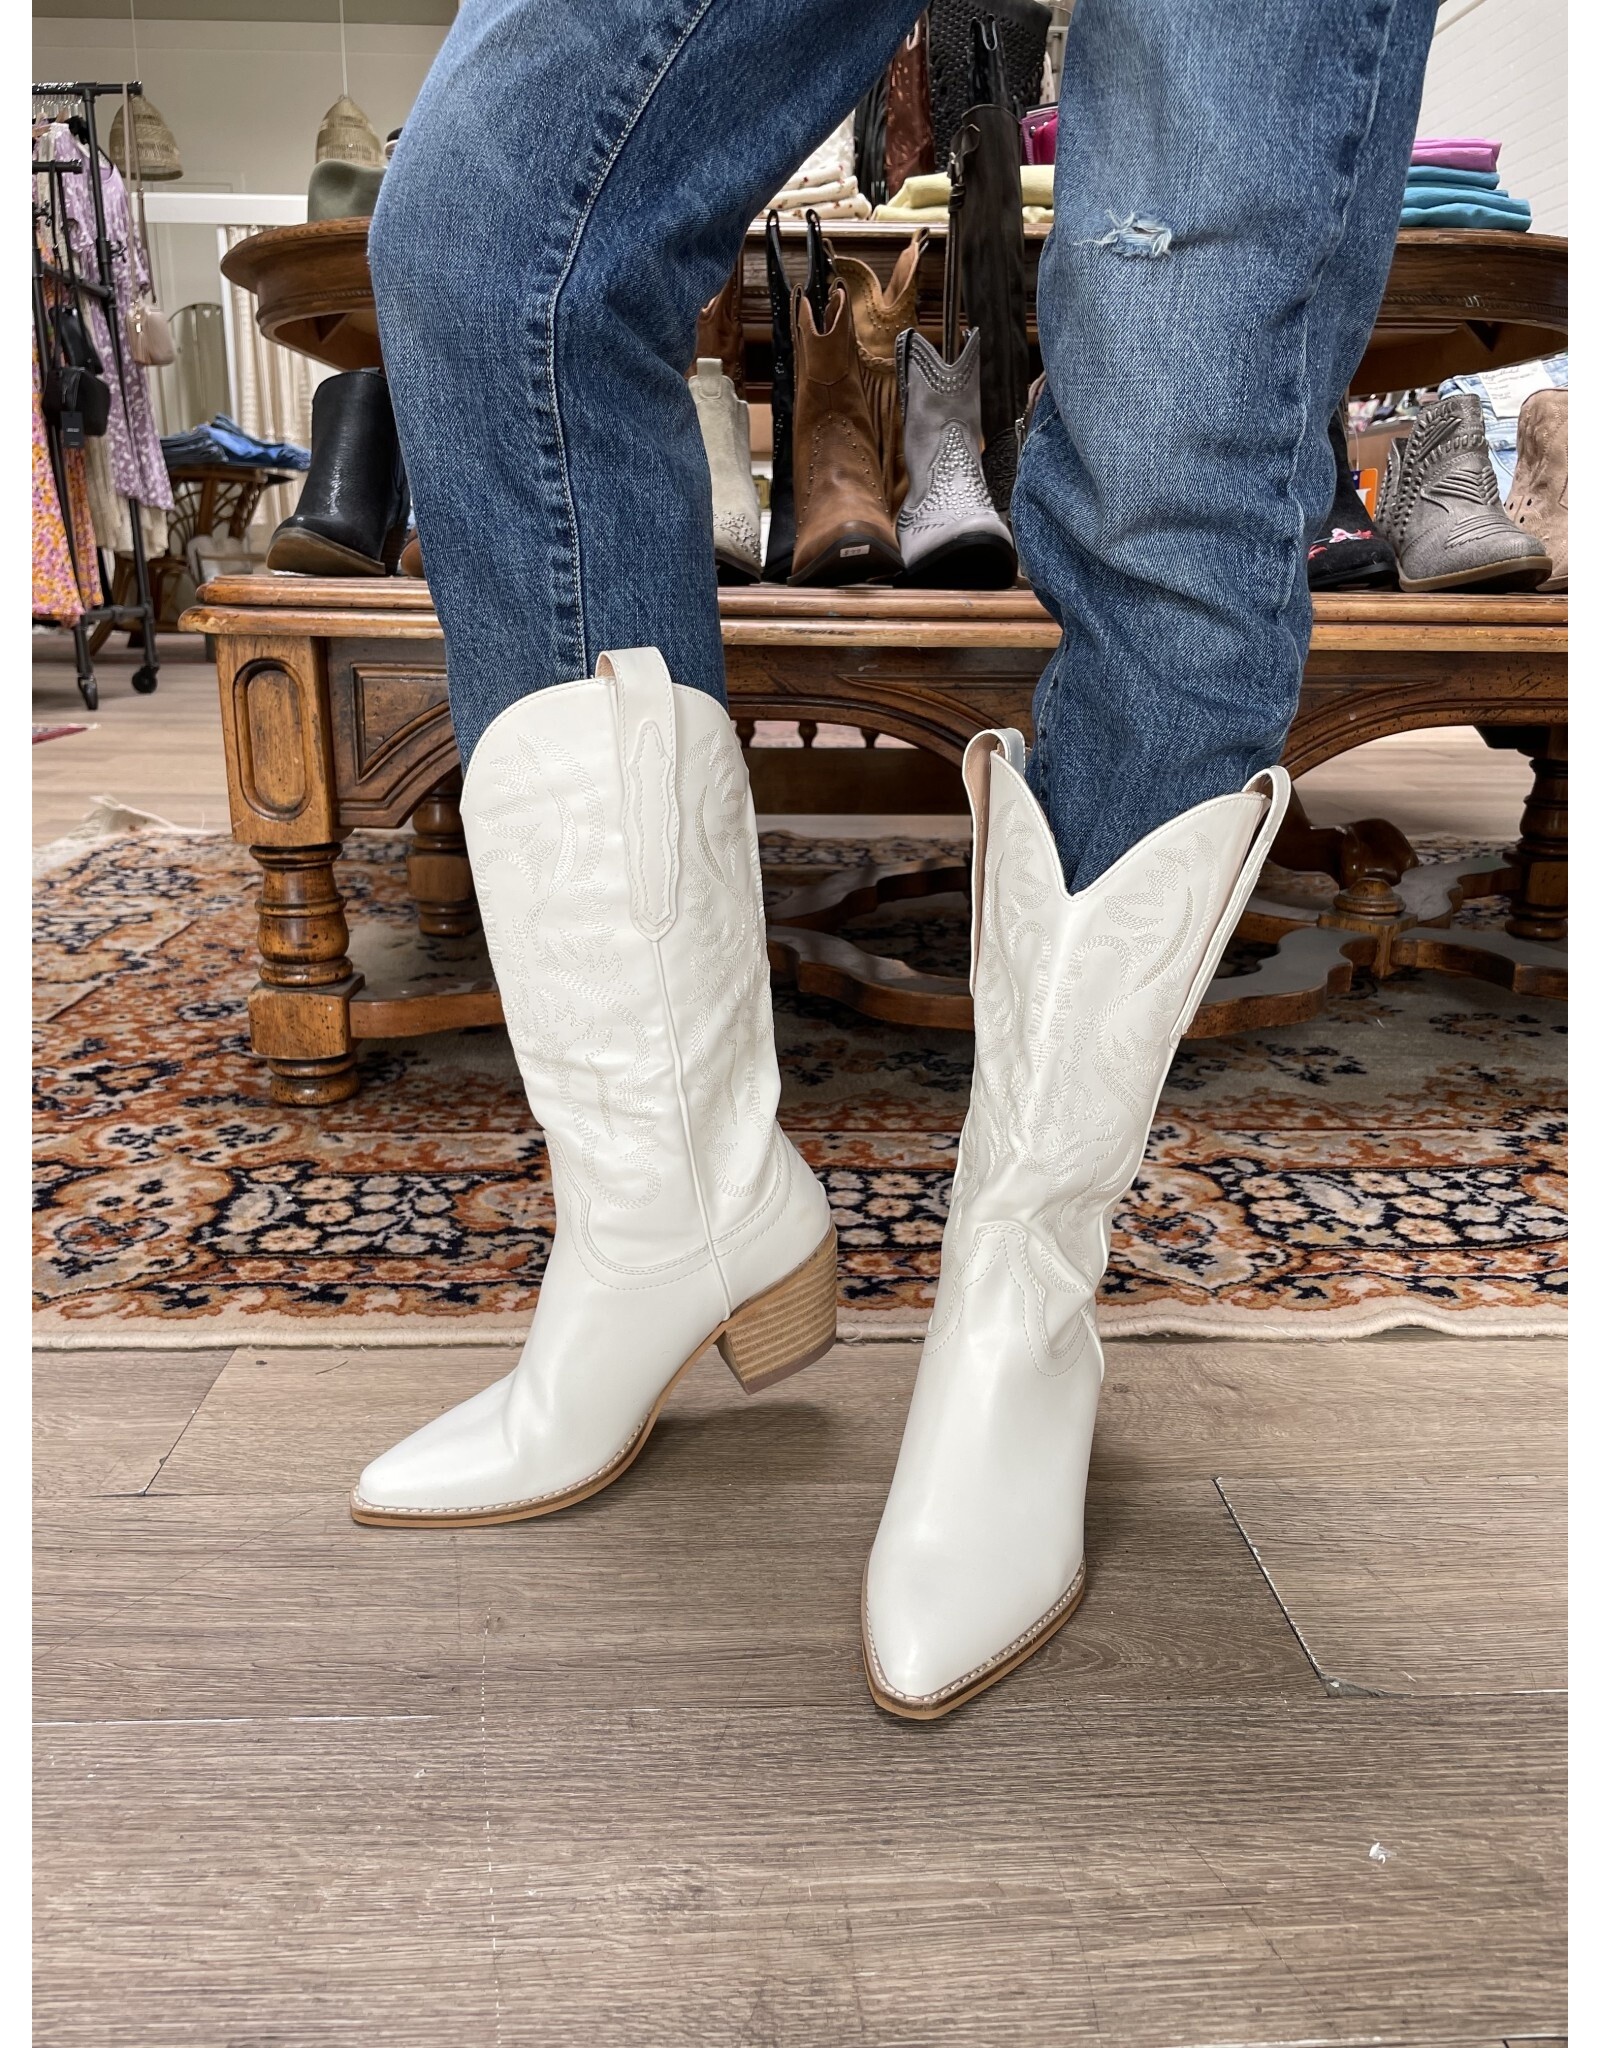 SOTD Hanan western boot (white)